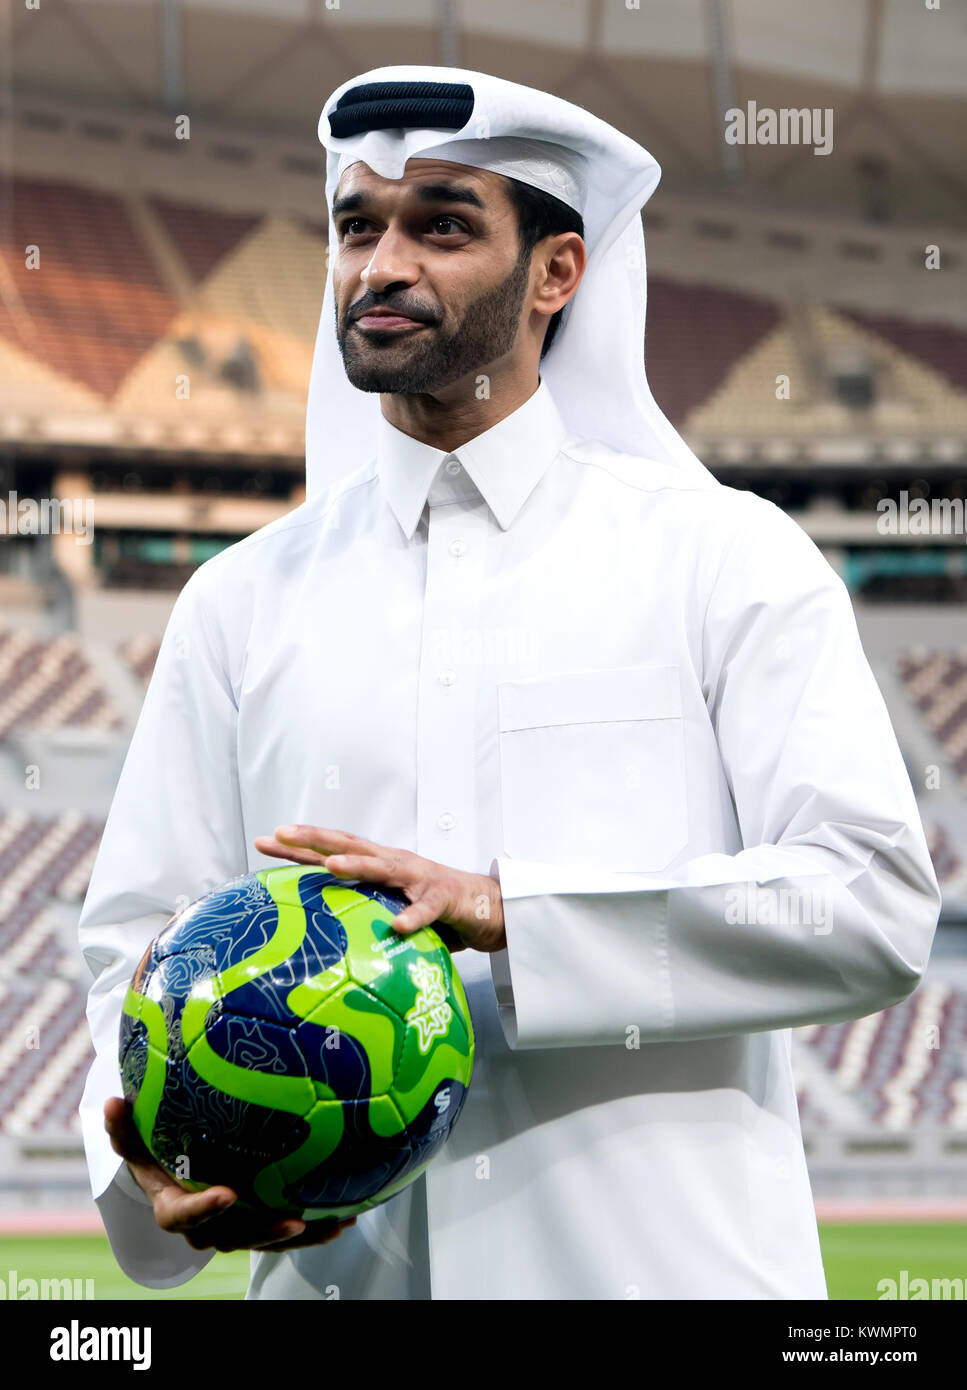 Doha, Qatar. El 4 de enero, 2018. El secretario general de la organización de la Copa Mundial comité Hassan Al-Thawadi está participando en una conferencia de prensa en el Estadio Internacional Khalifa en Doha, Qatar, del 4 de enero de 2018. La ronda final de la Copa Mundial de fútbol se celebrará en Qatar en 2022. Crédito: Sven Hoppe/dpa/Alamy Live News Foto de stock